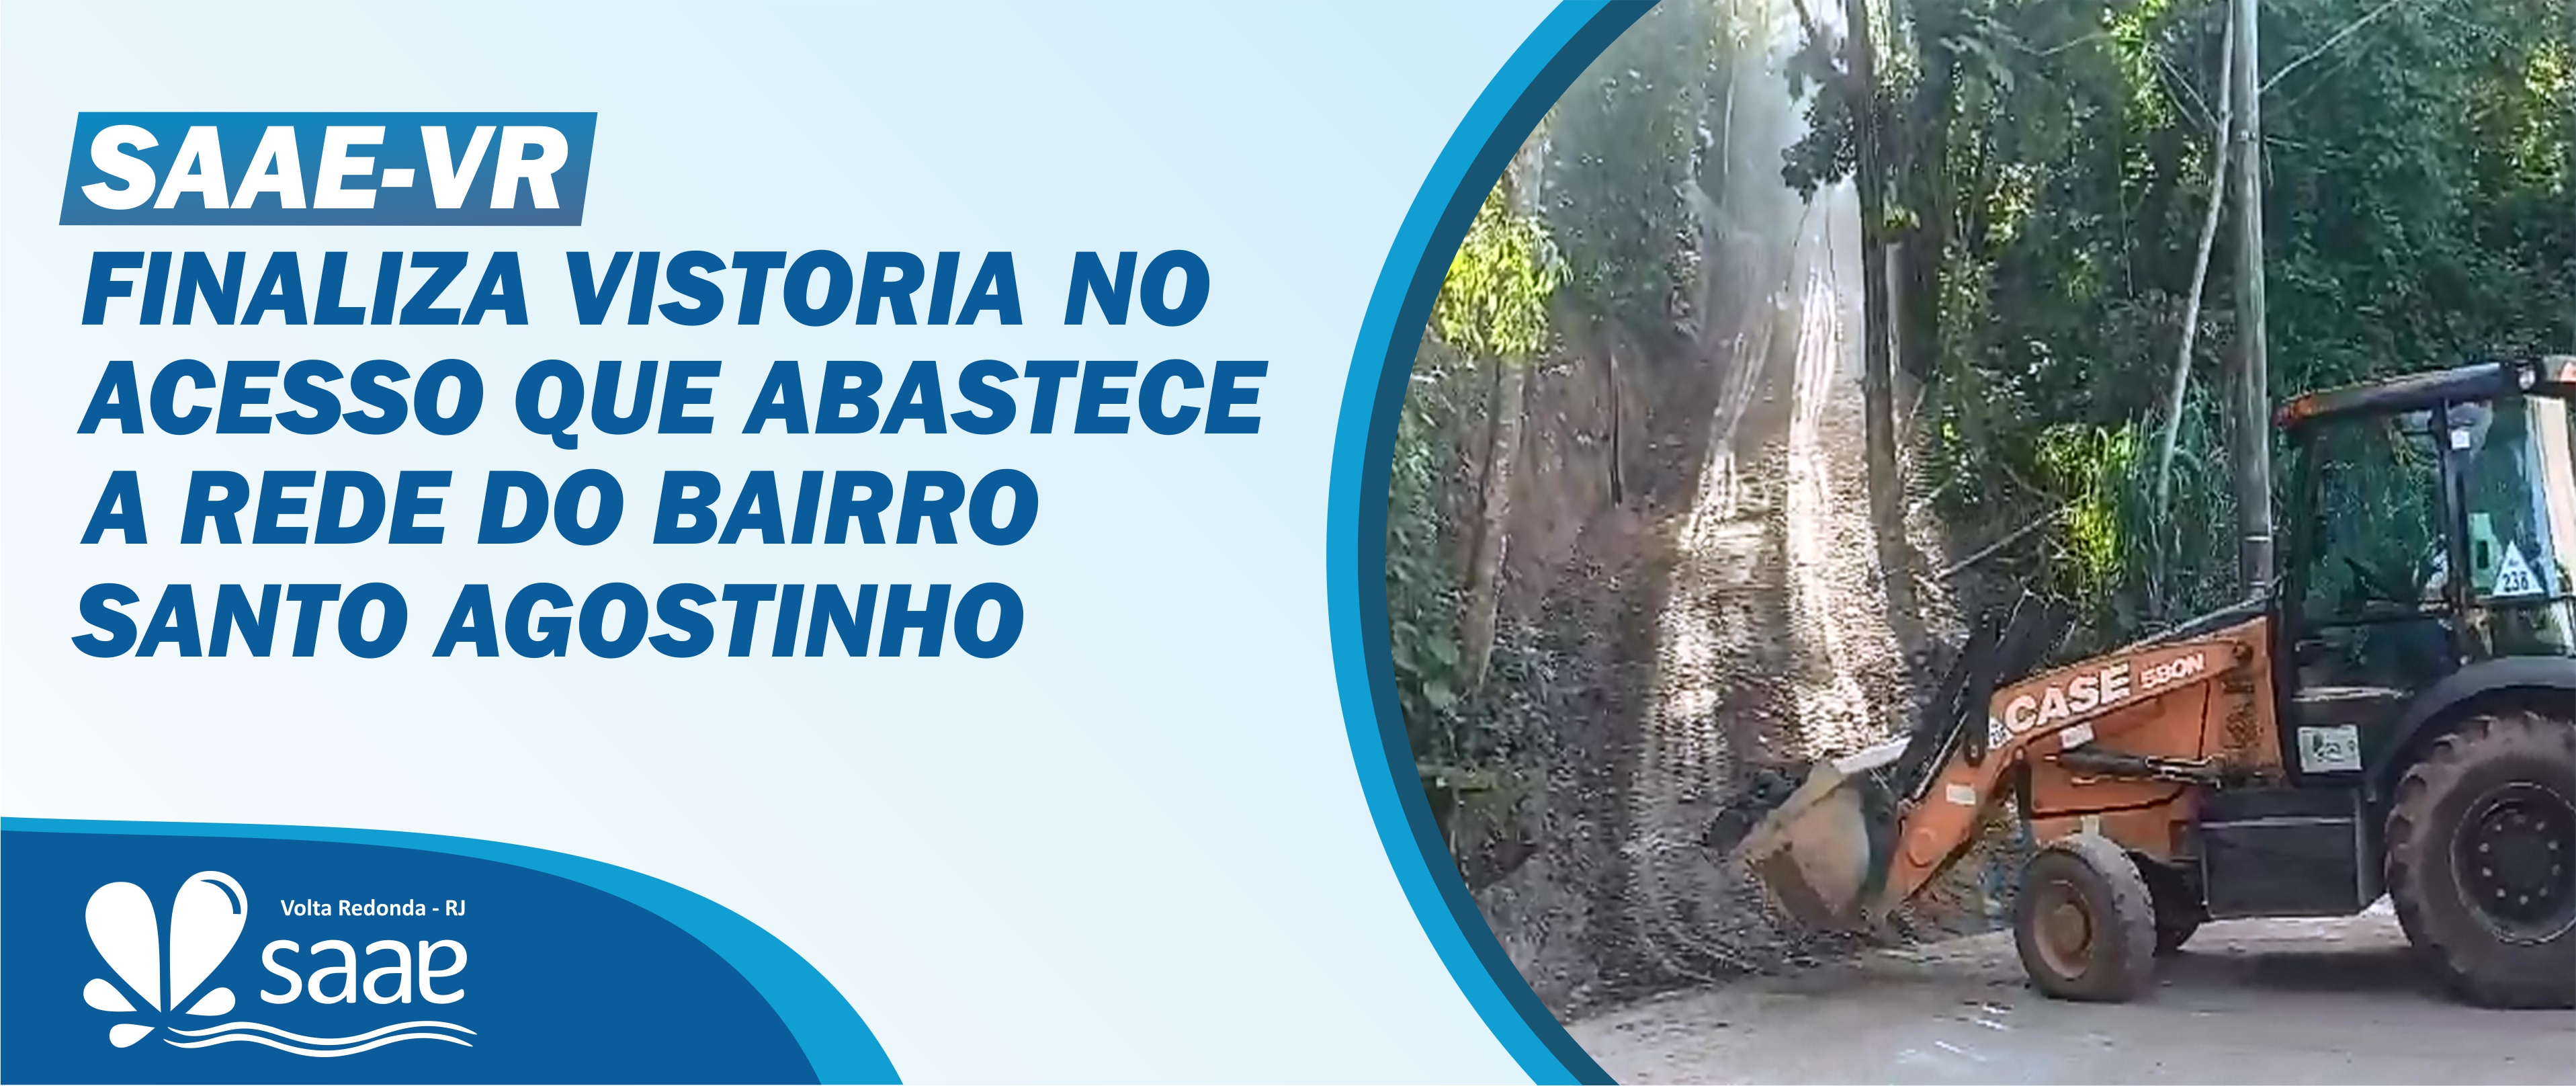 Saae-VR finaliza vistoria no acesso que abastece a rede do bairro do Santo Agostinho